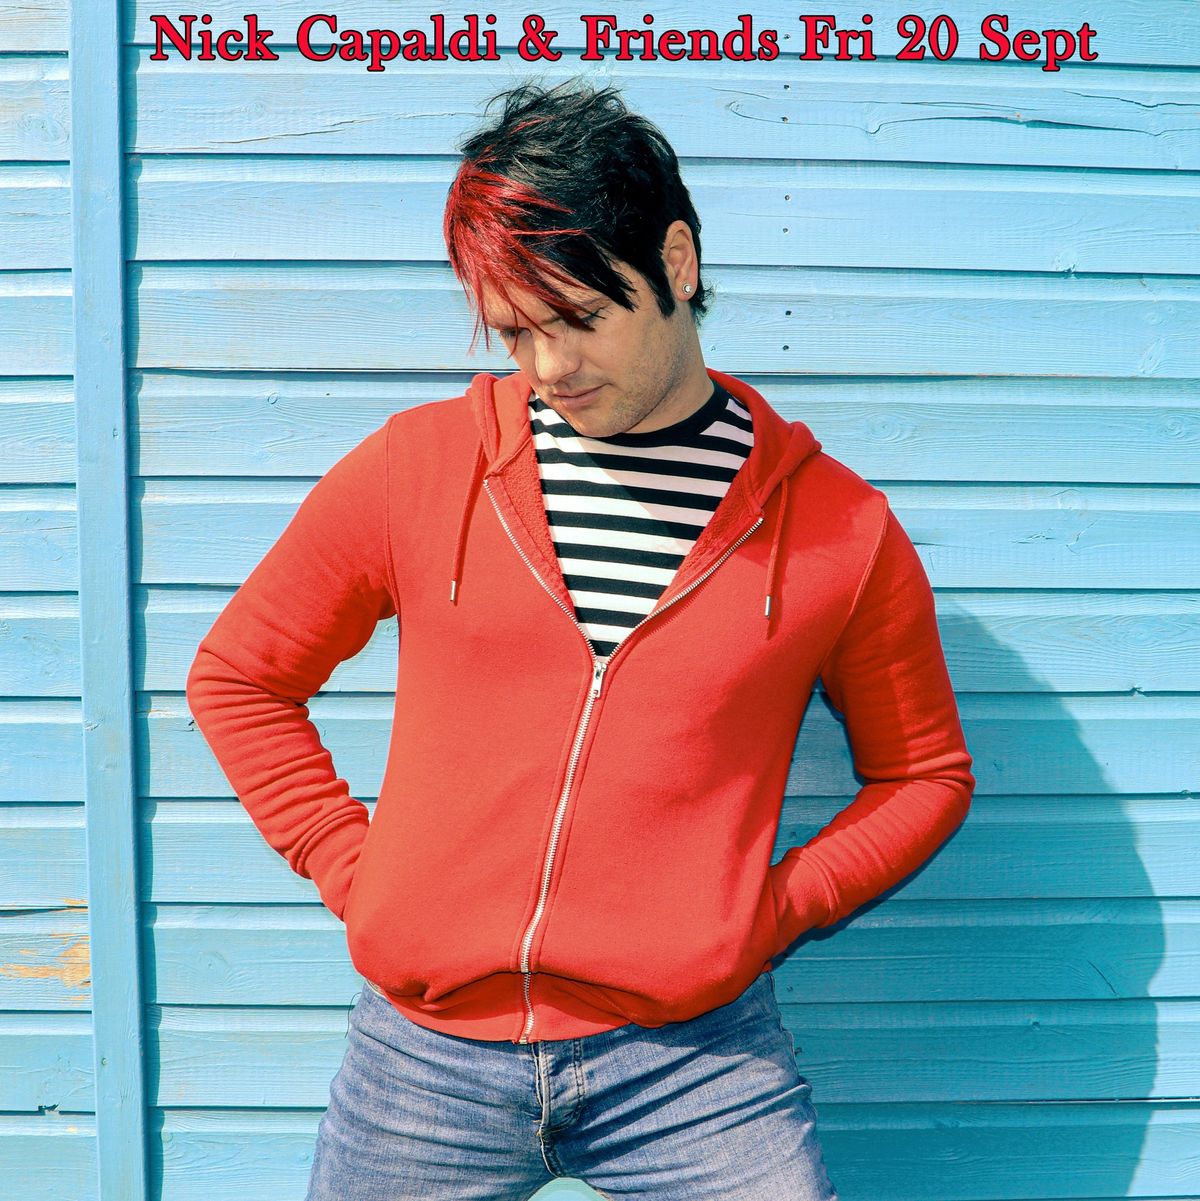 Nick Capaldi & Friends